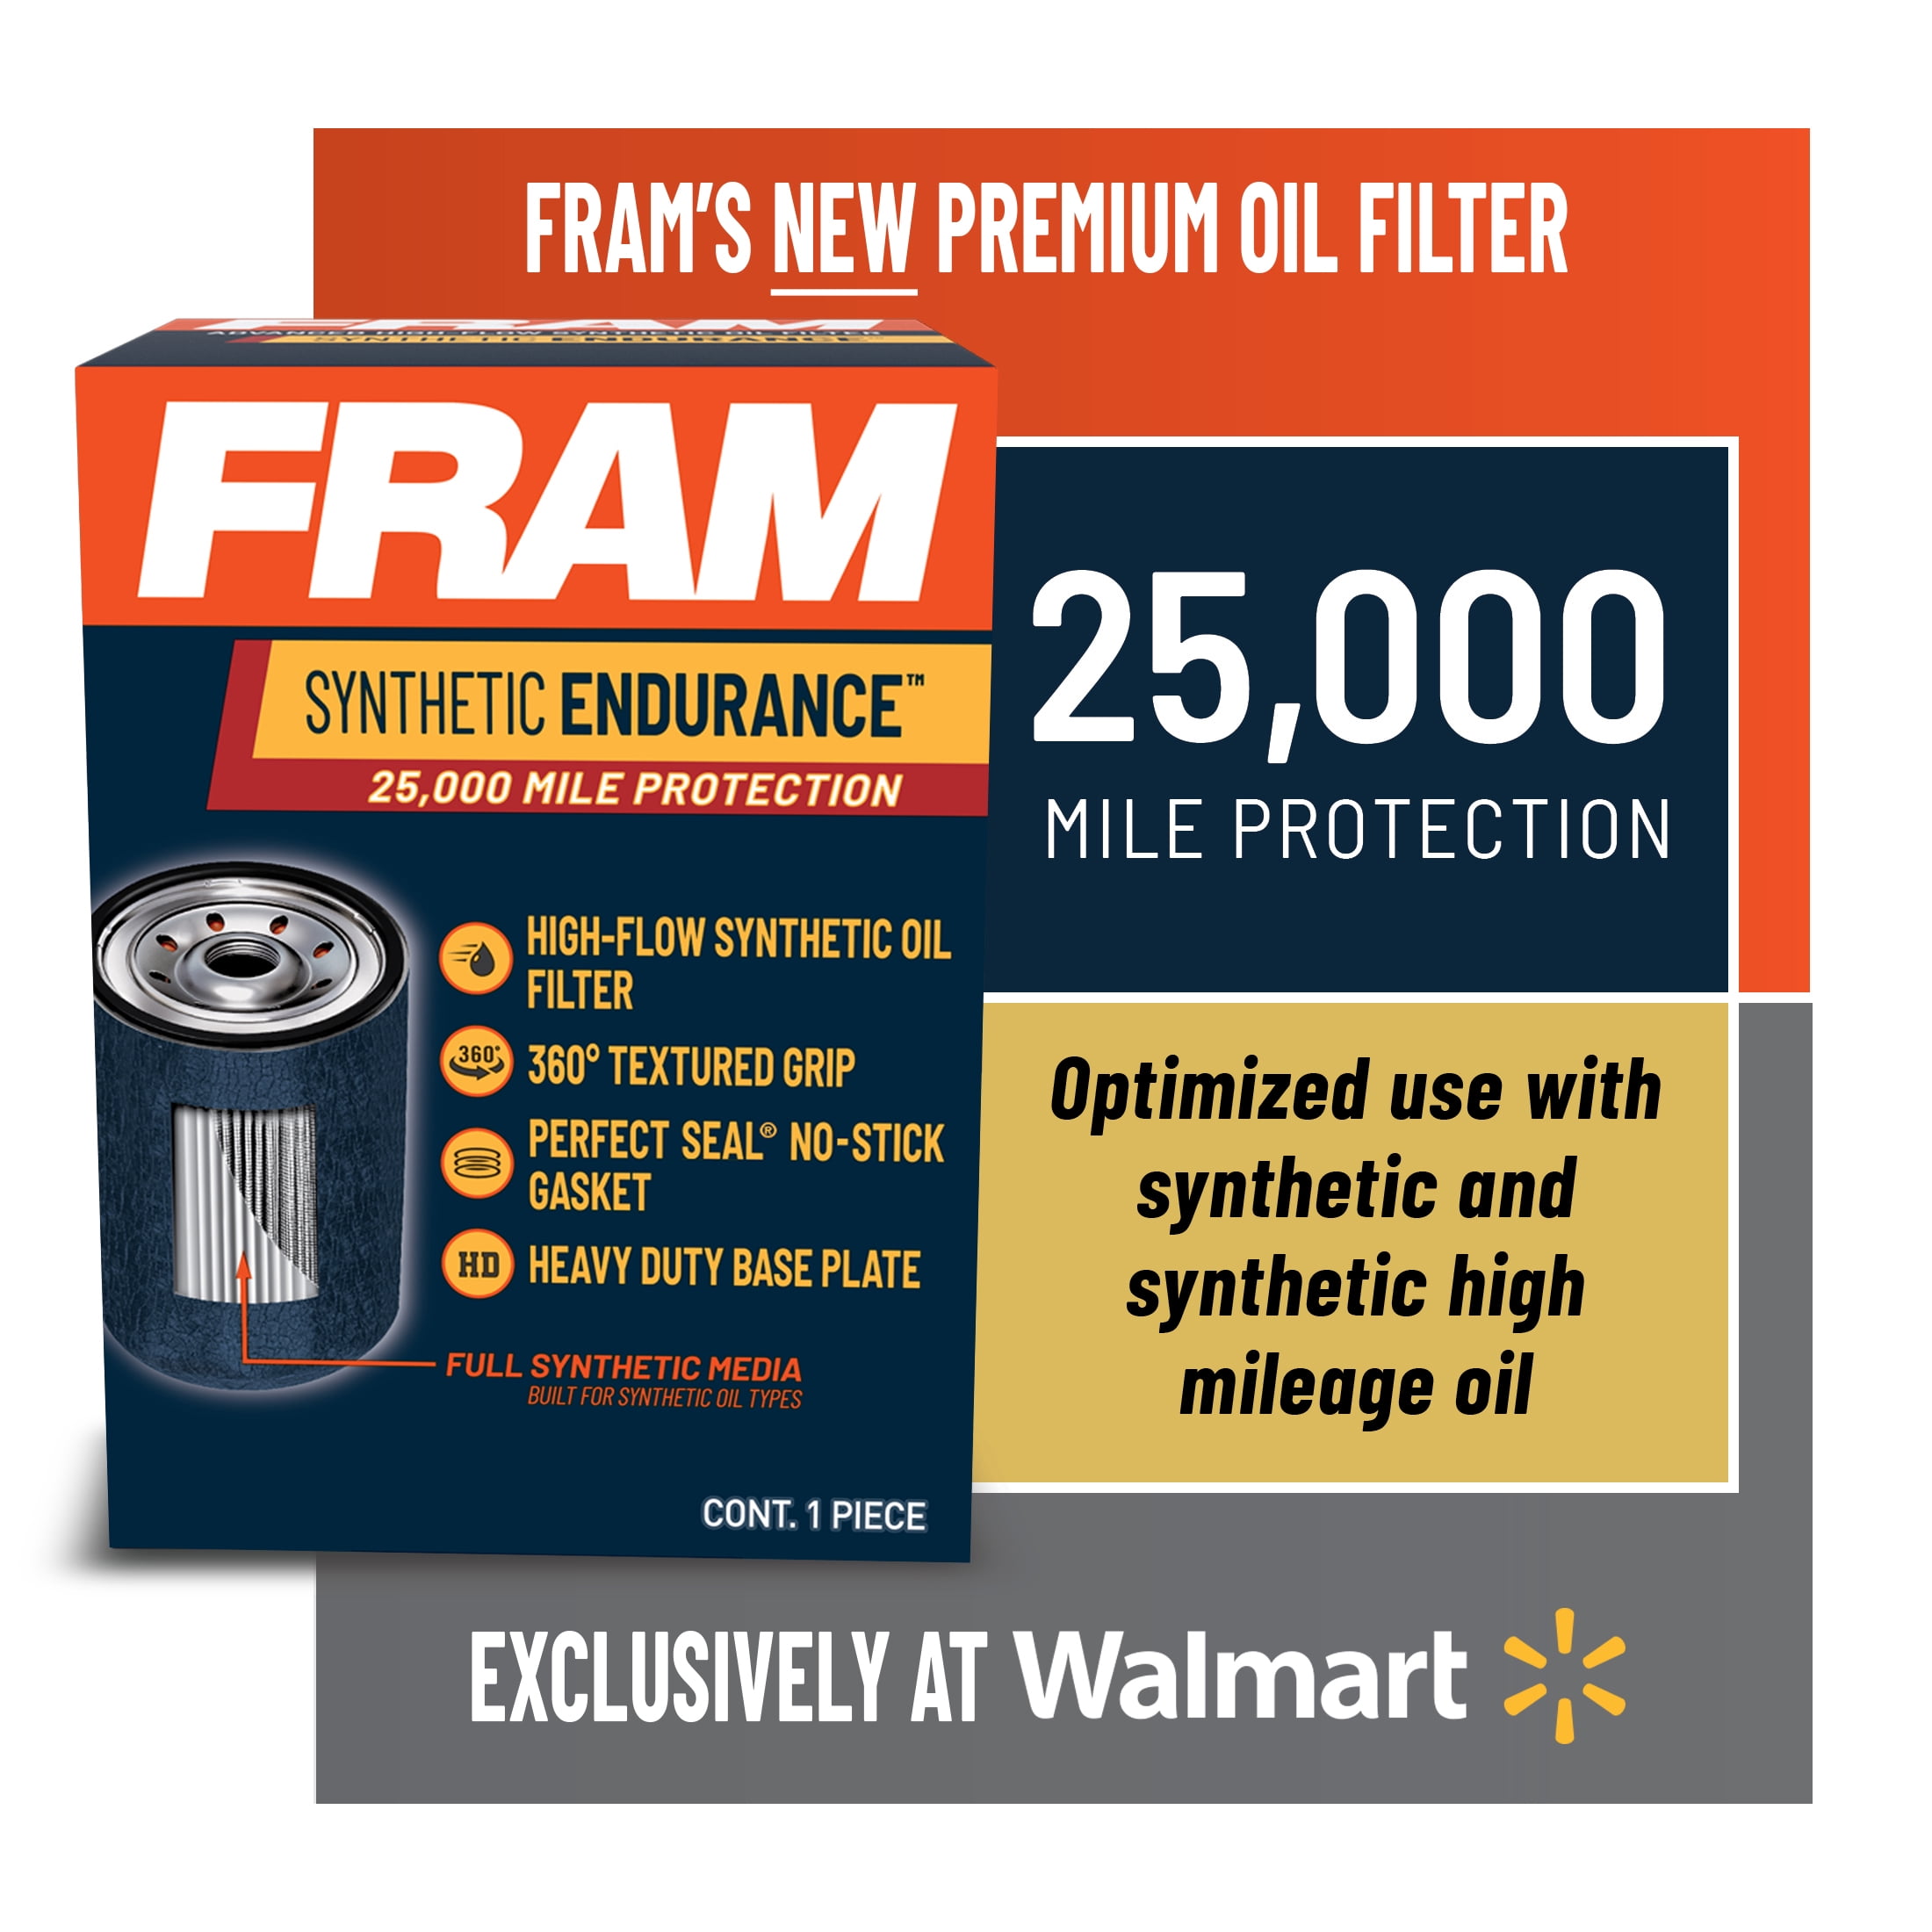 FRAM Endurance FE2, 25K mile Premium Oil Filter for Synthetic Oils - Walmart.com